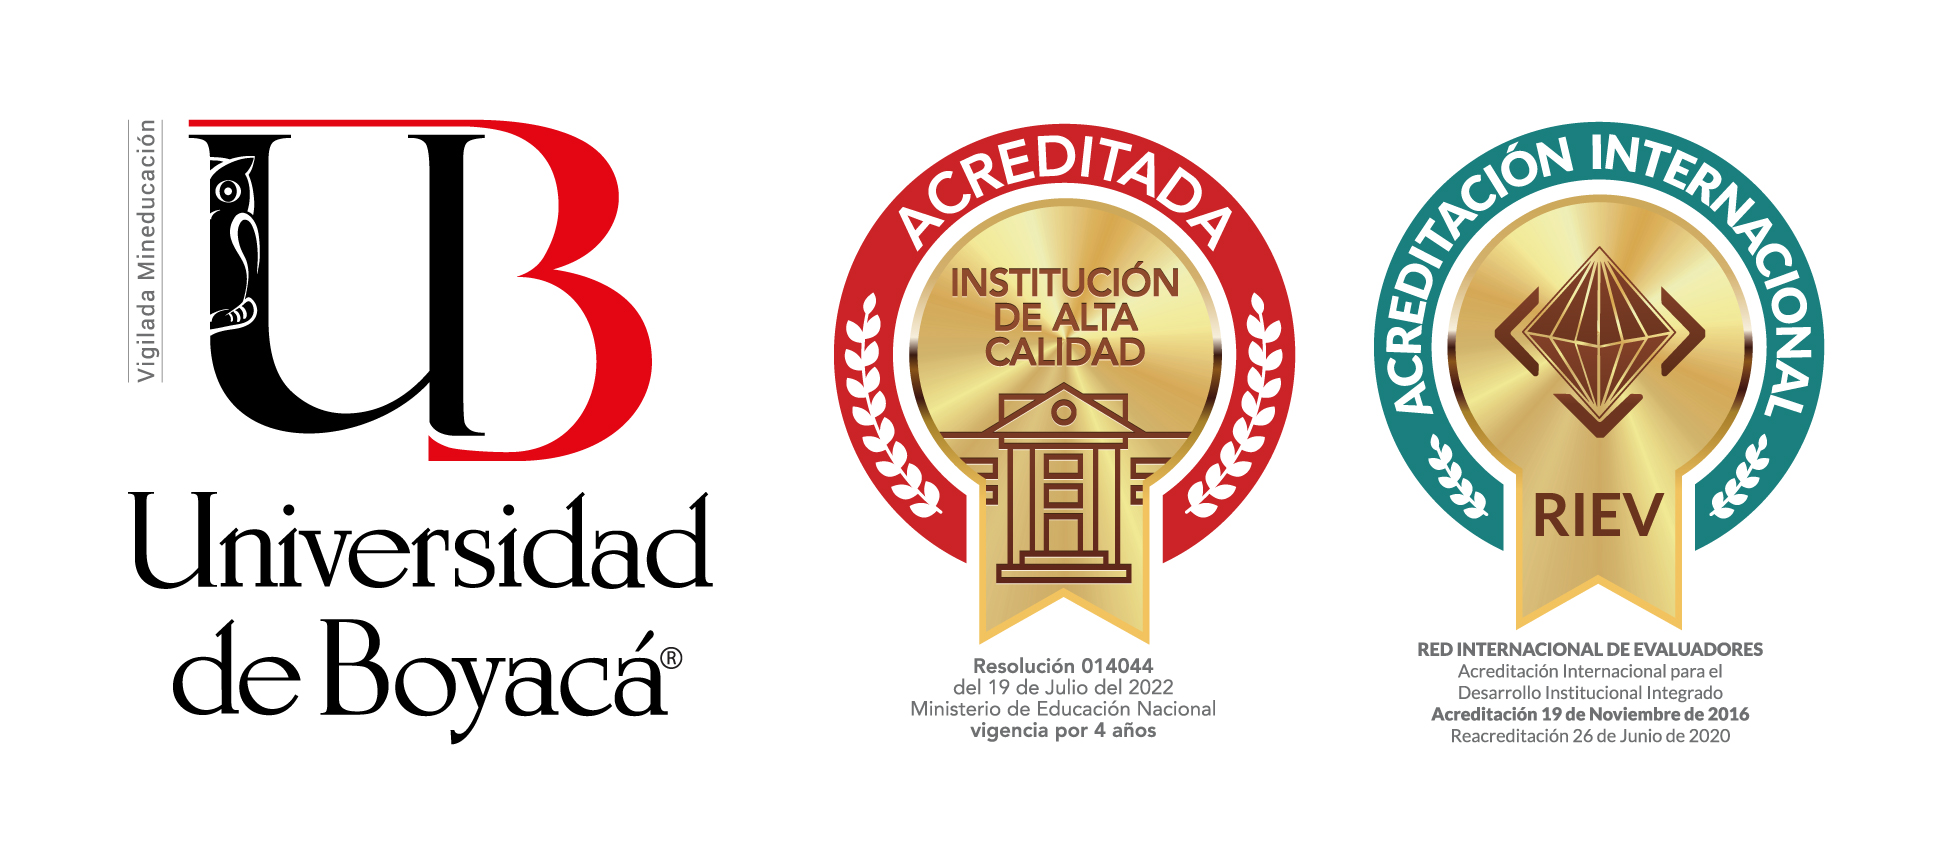 Logo Universidad de Boyacá - Vertical